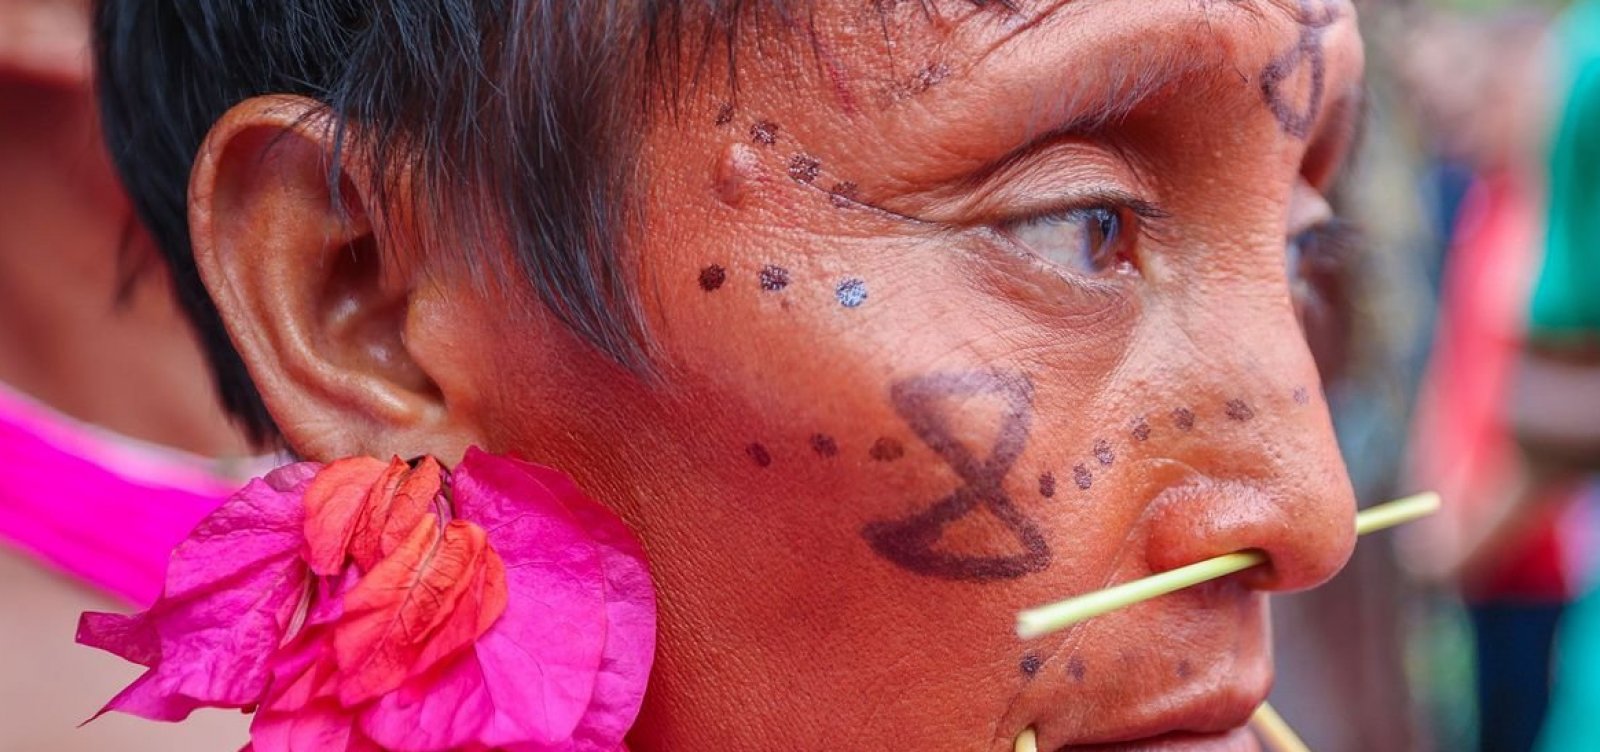 Agentes da Força Nacional do SUS vão a Roraima nesta segunda para atender povo Yanomami